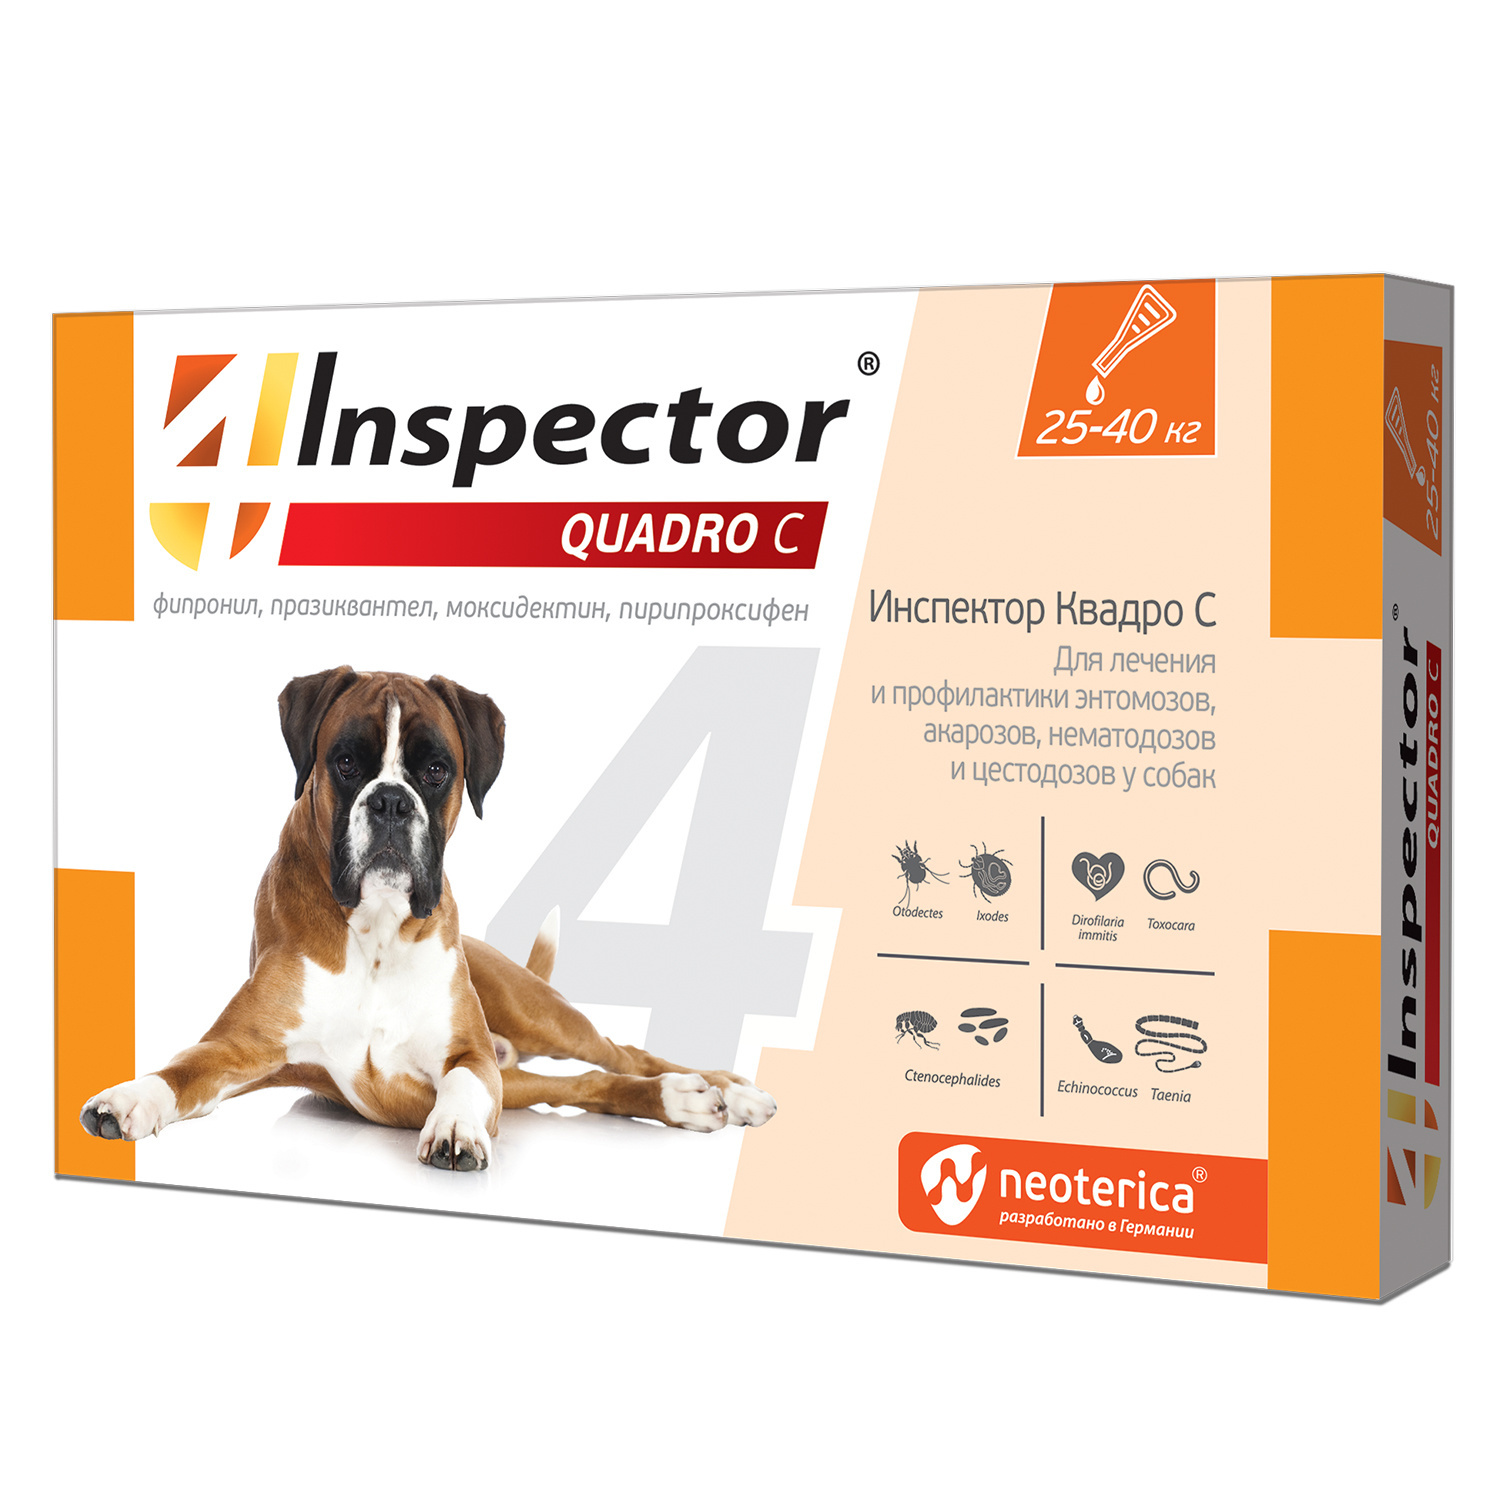 Inspector quadro капли на холку для собак 25-40 кг, от клещей, насекомых, глистов (24 г)